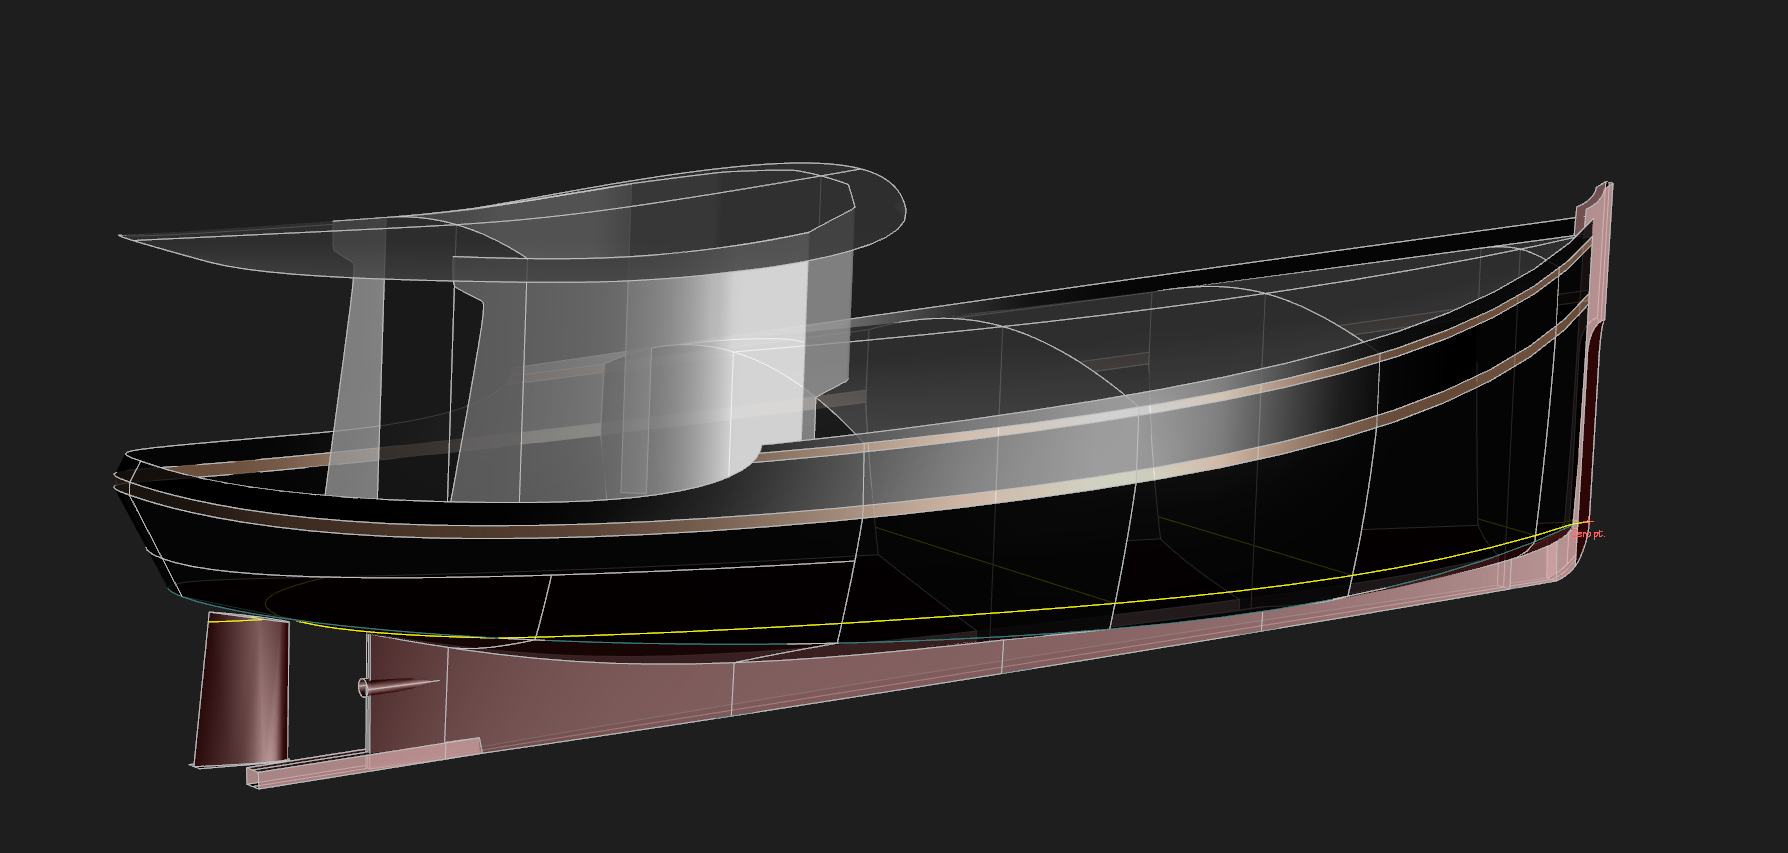 36' Dream Yacht - MOLLY - Kasten Marine Design, Inc.